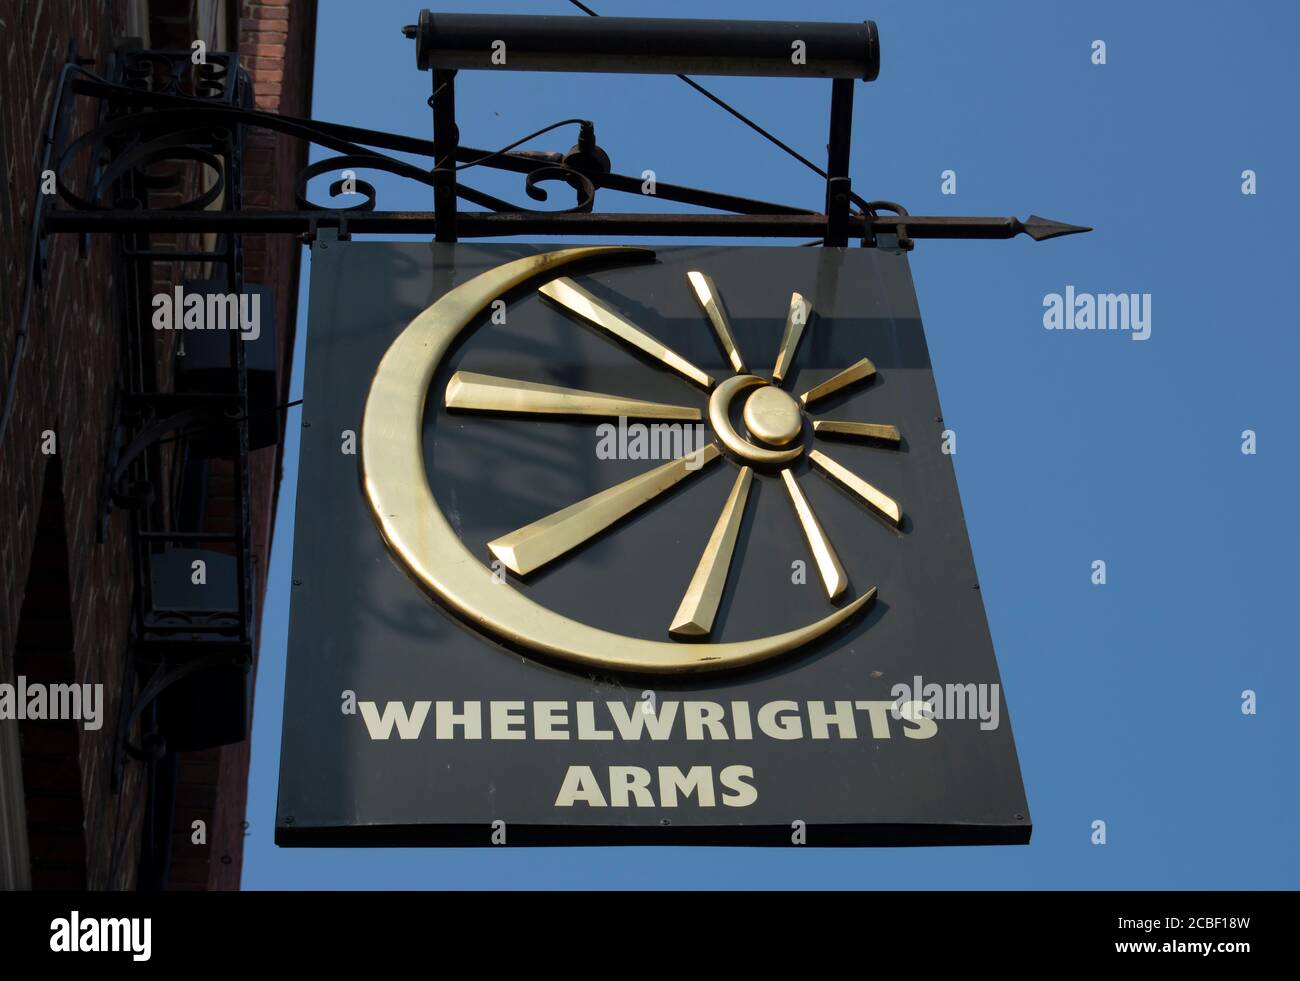 panneau de pub britannique pour les armes de whewrights, kingston upon thames, surrey, angleterre Banque D'Images